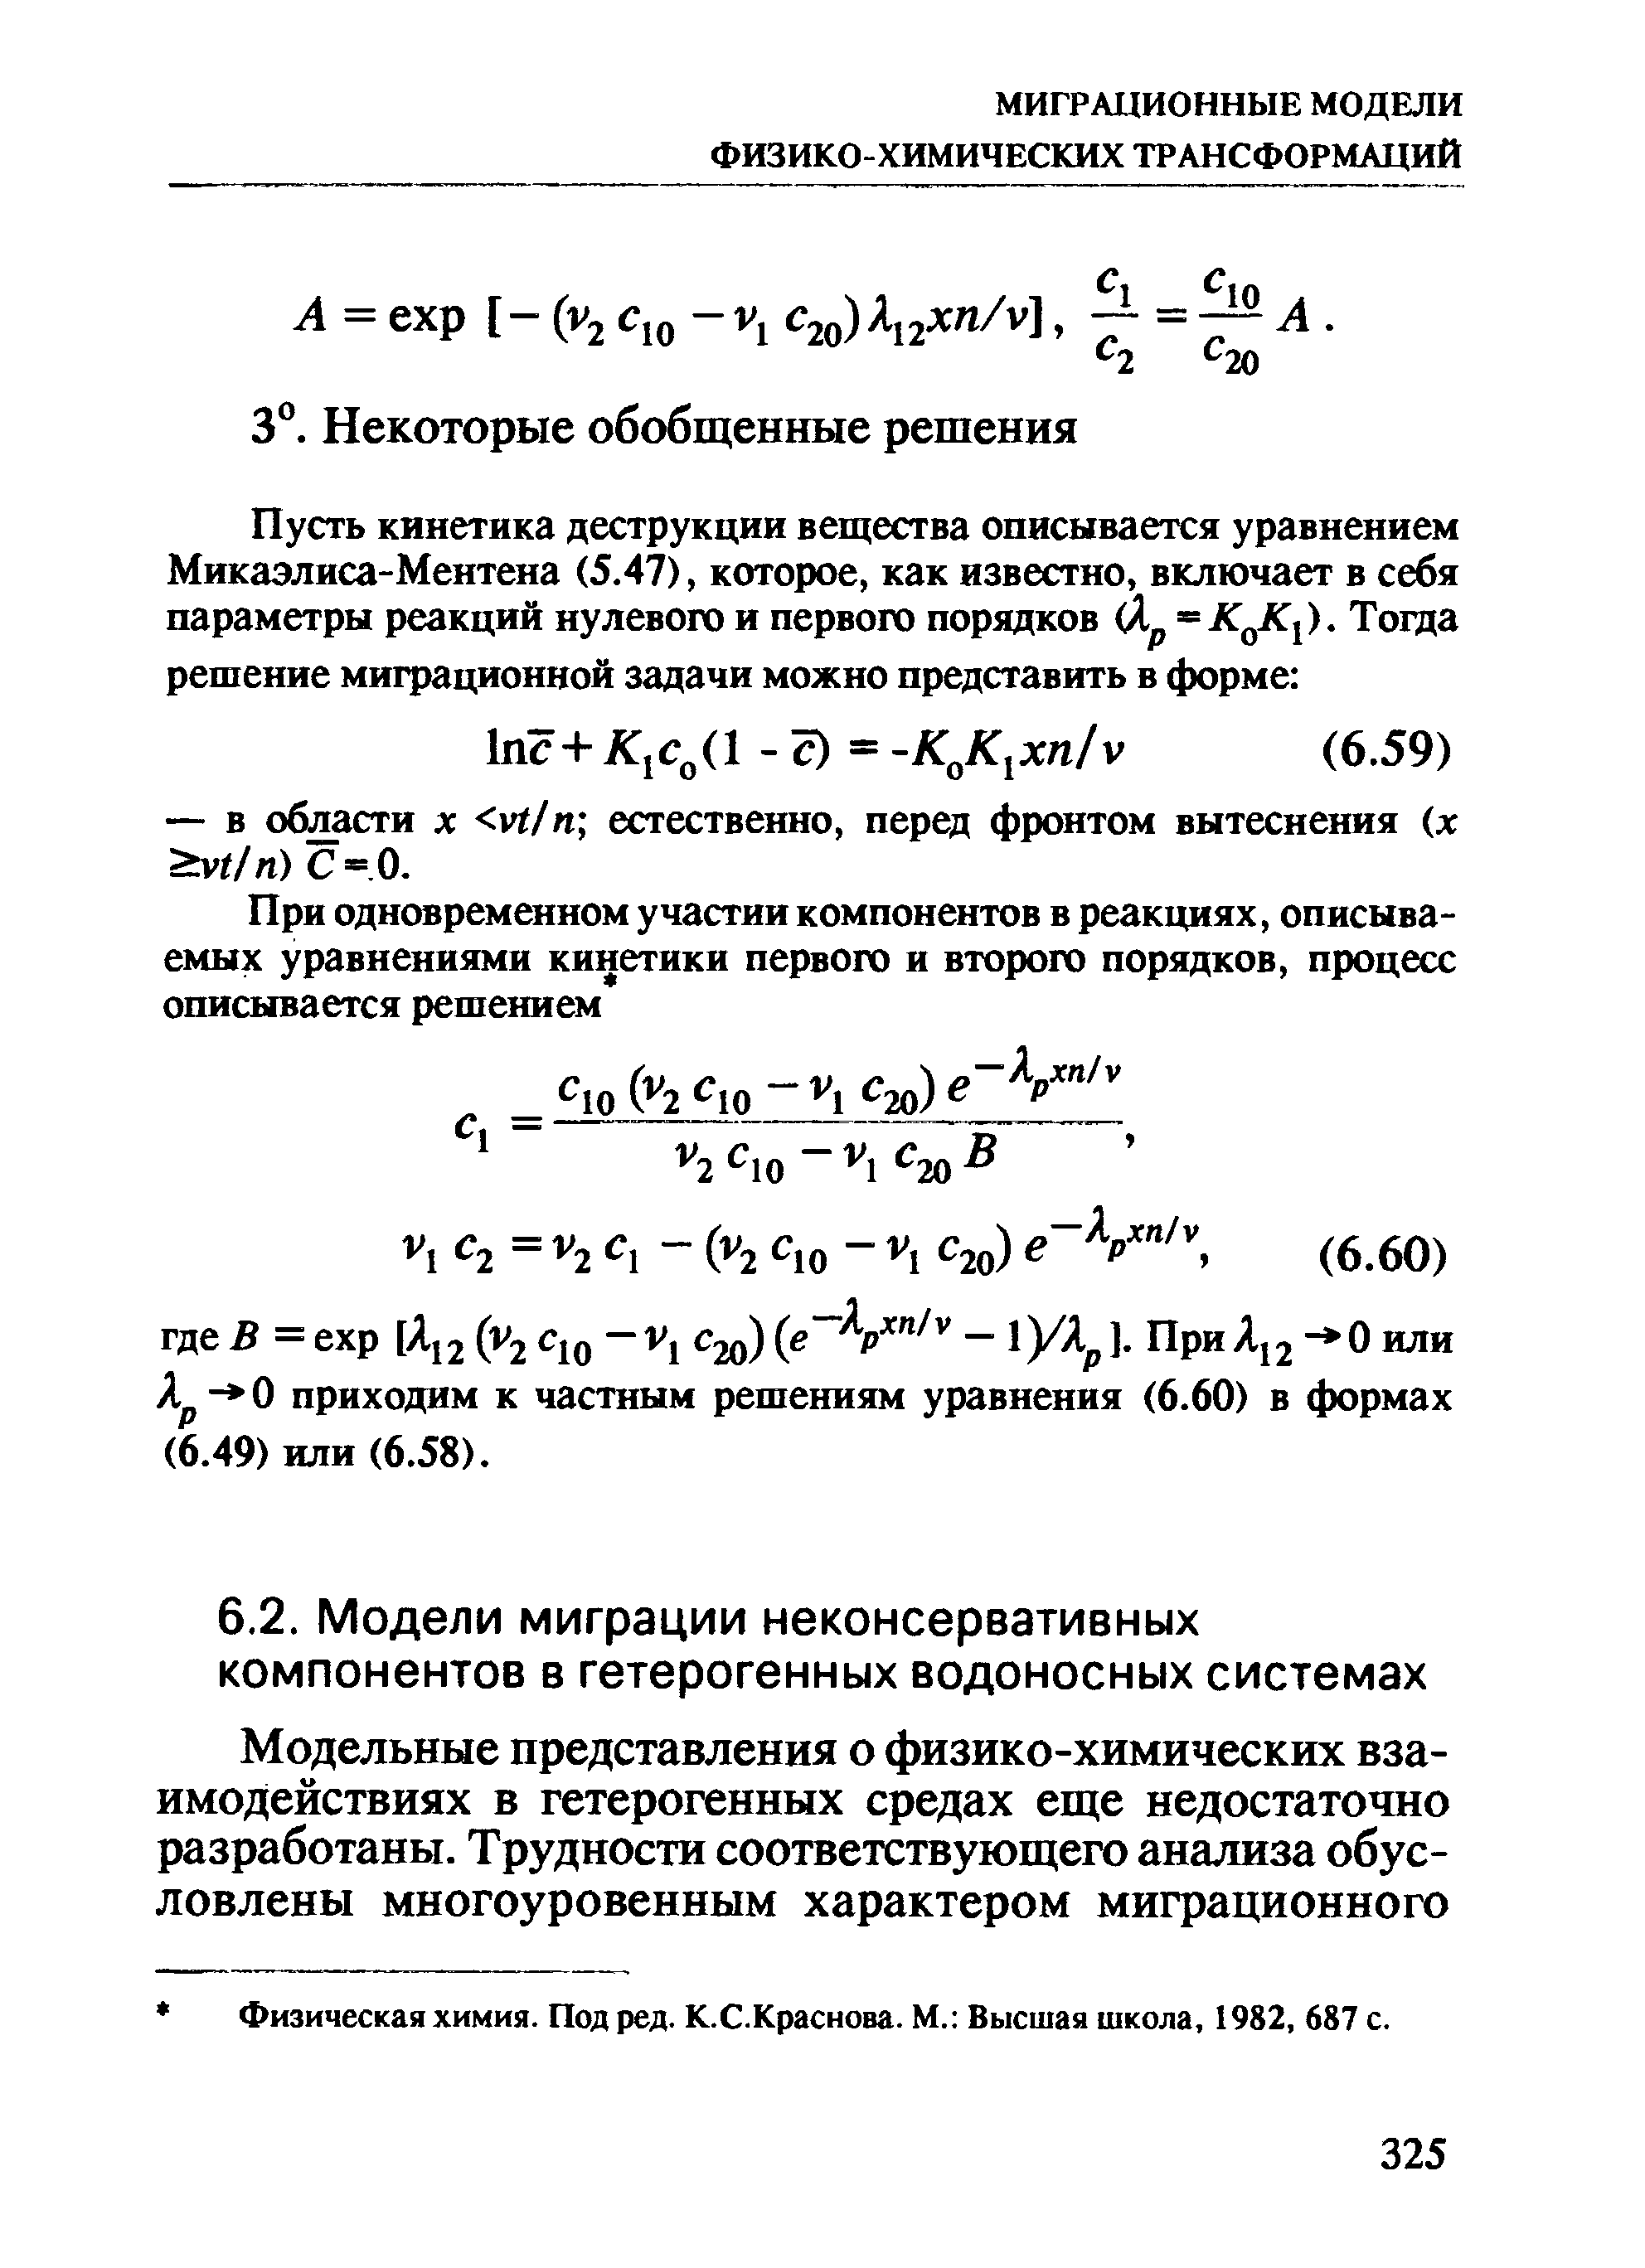 Физическая химия. Под ред. К.С.Краснова. М. Высшая школа, 1982, 687 с.